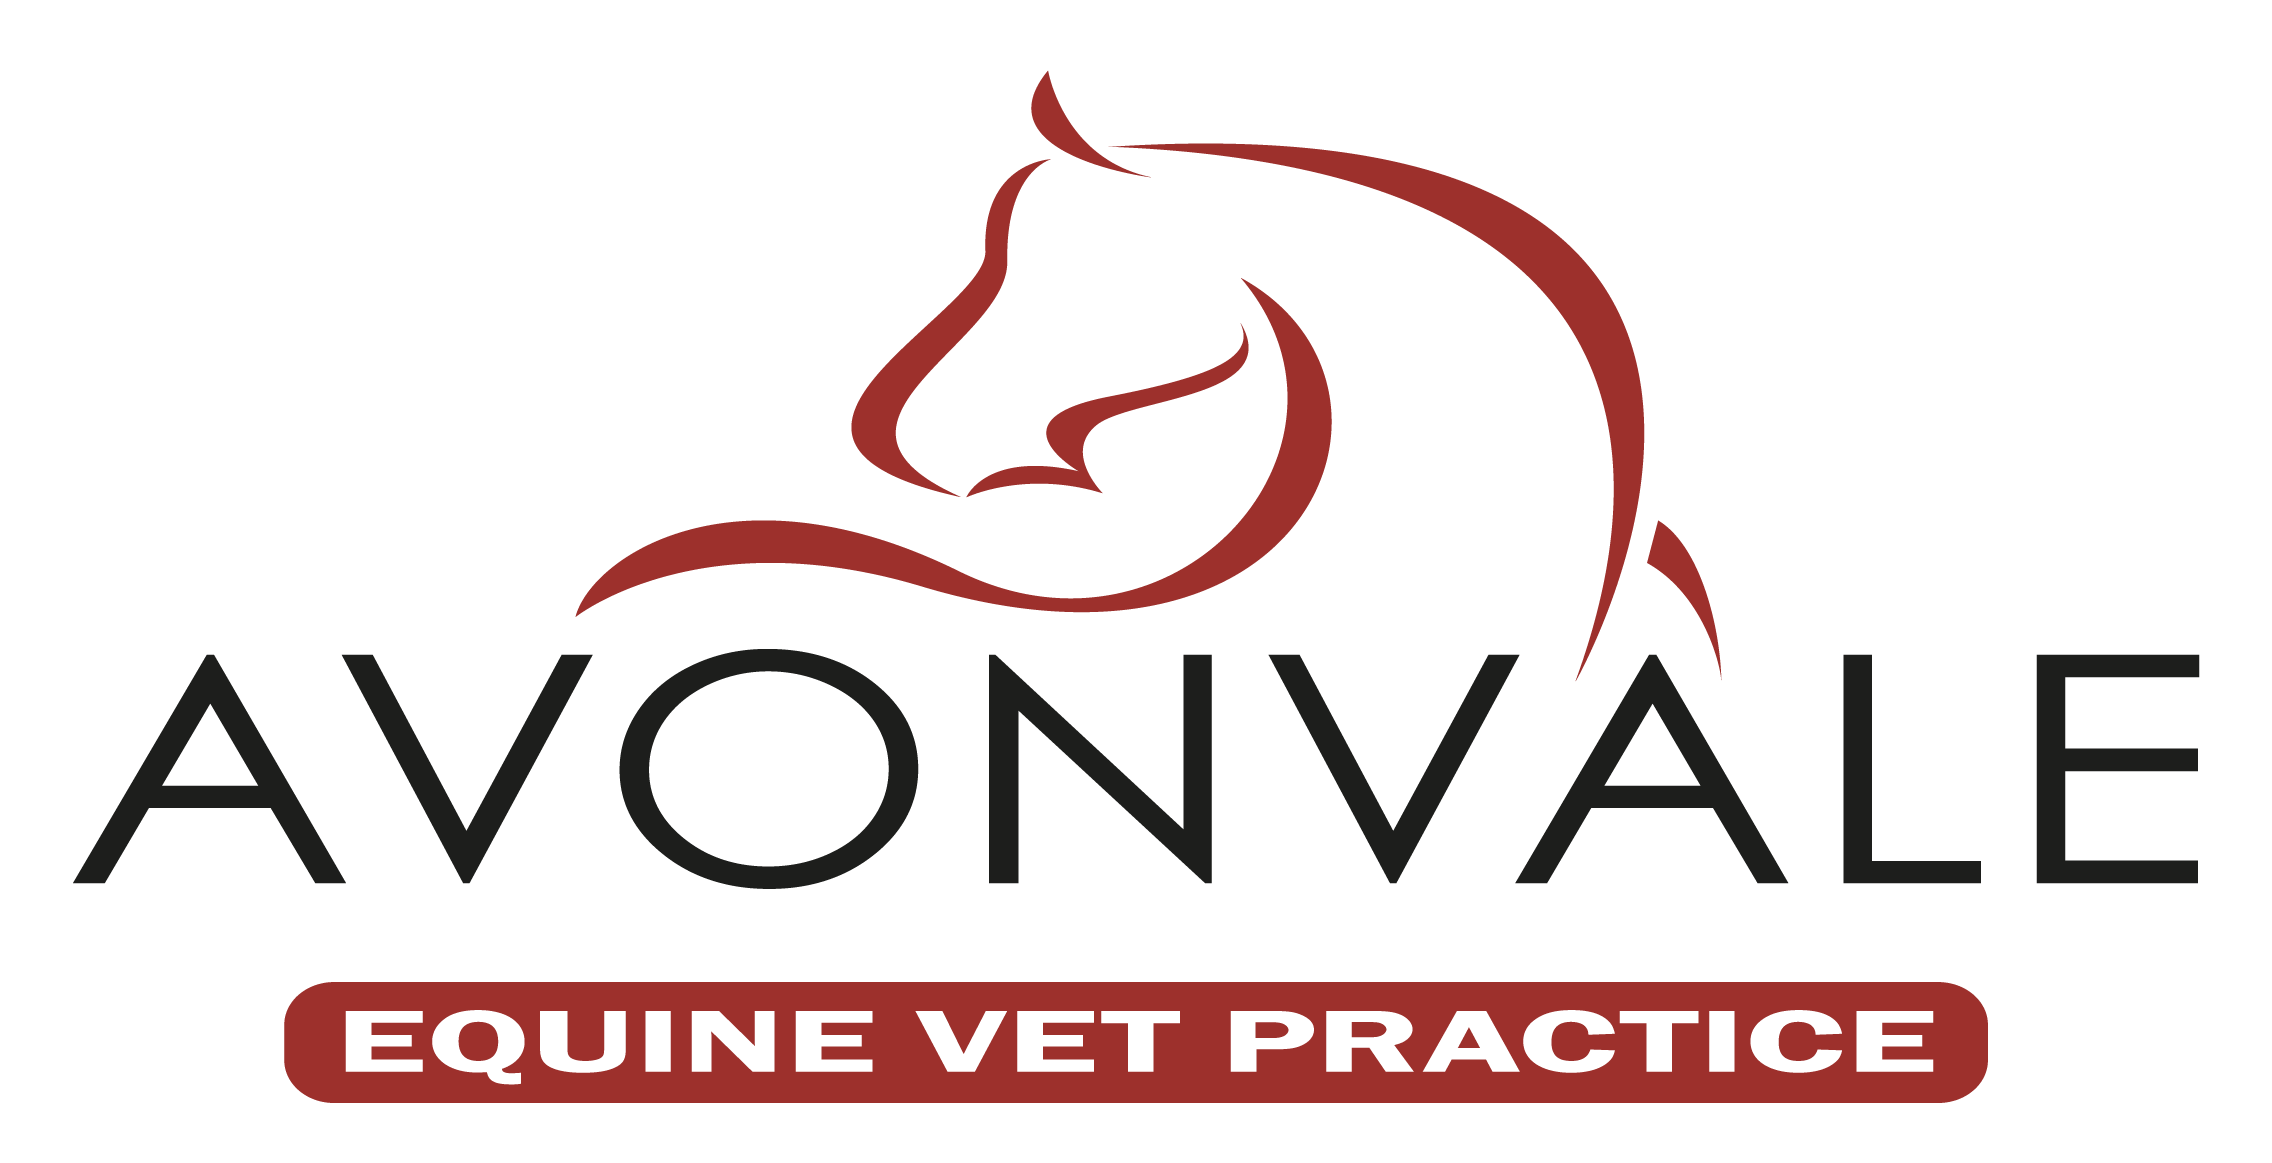 Avonvale Equine Practice